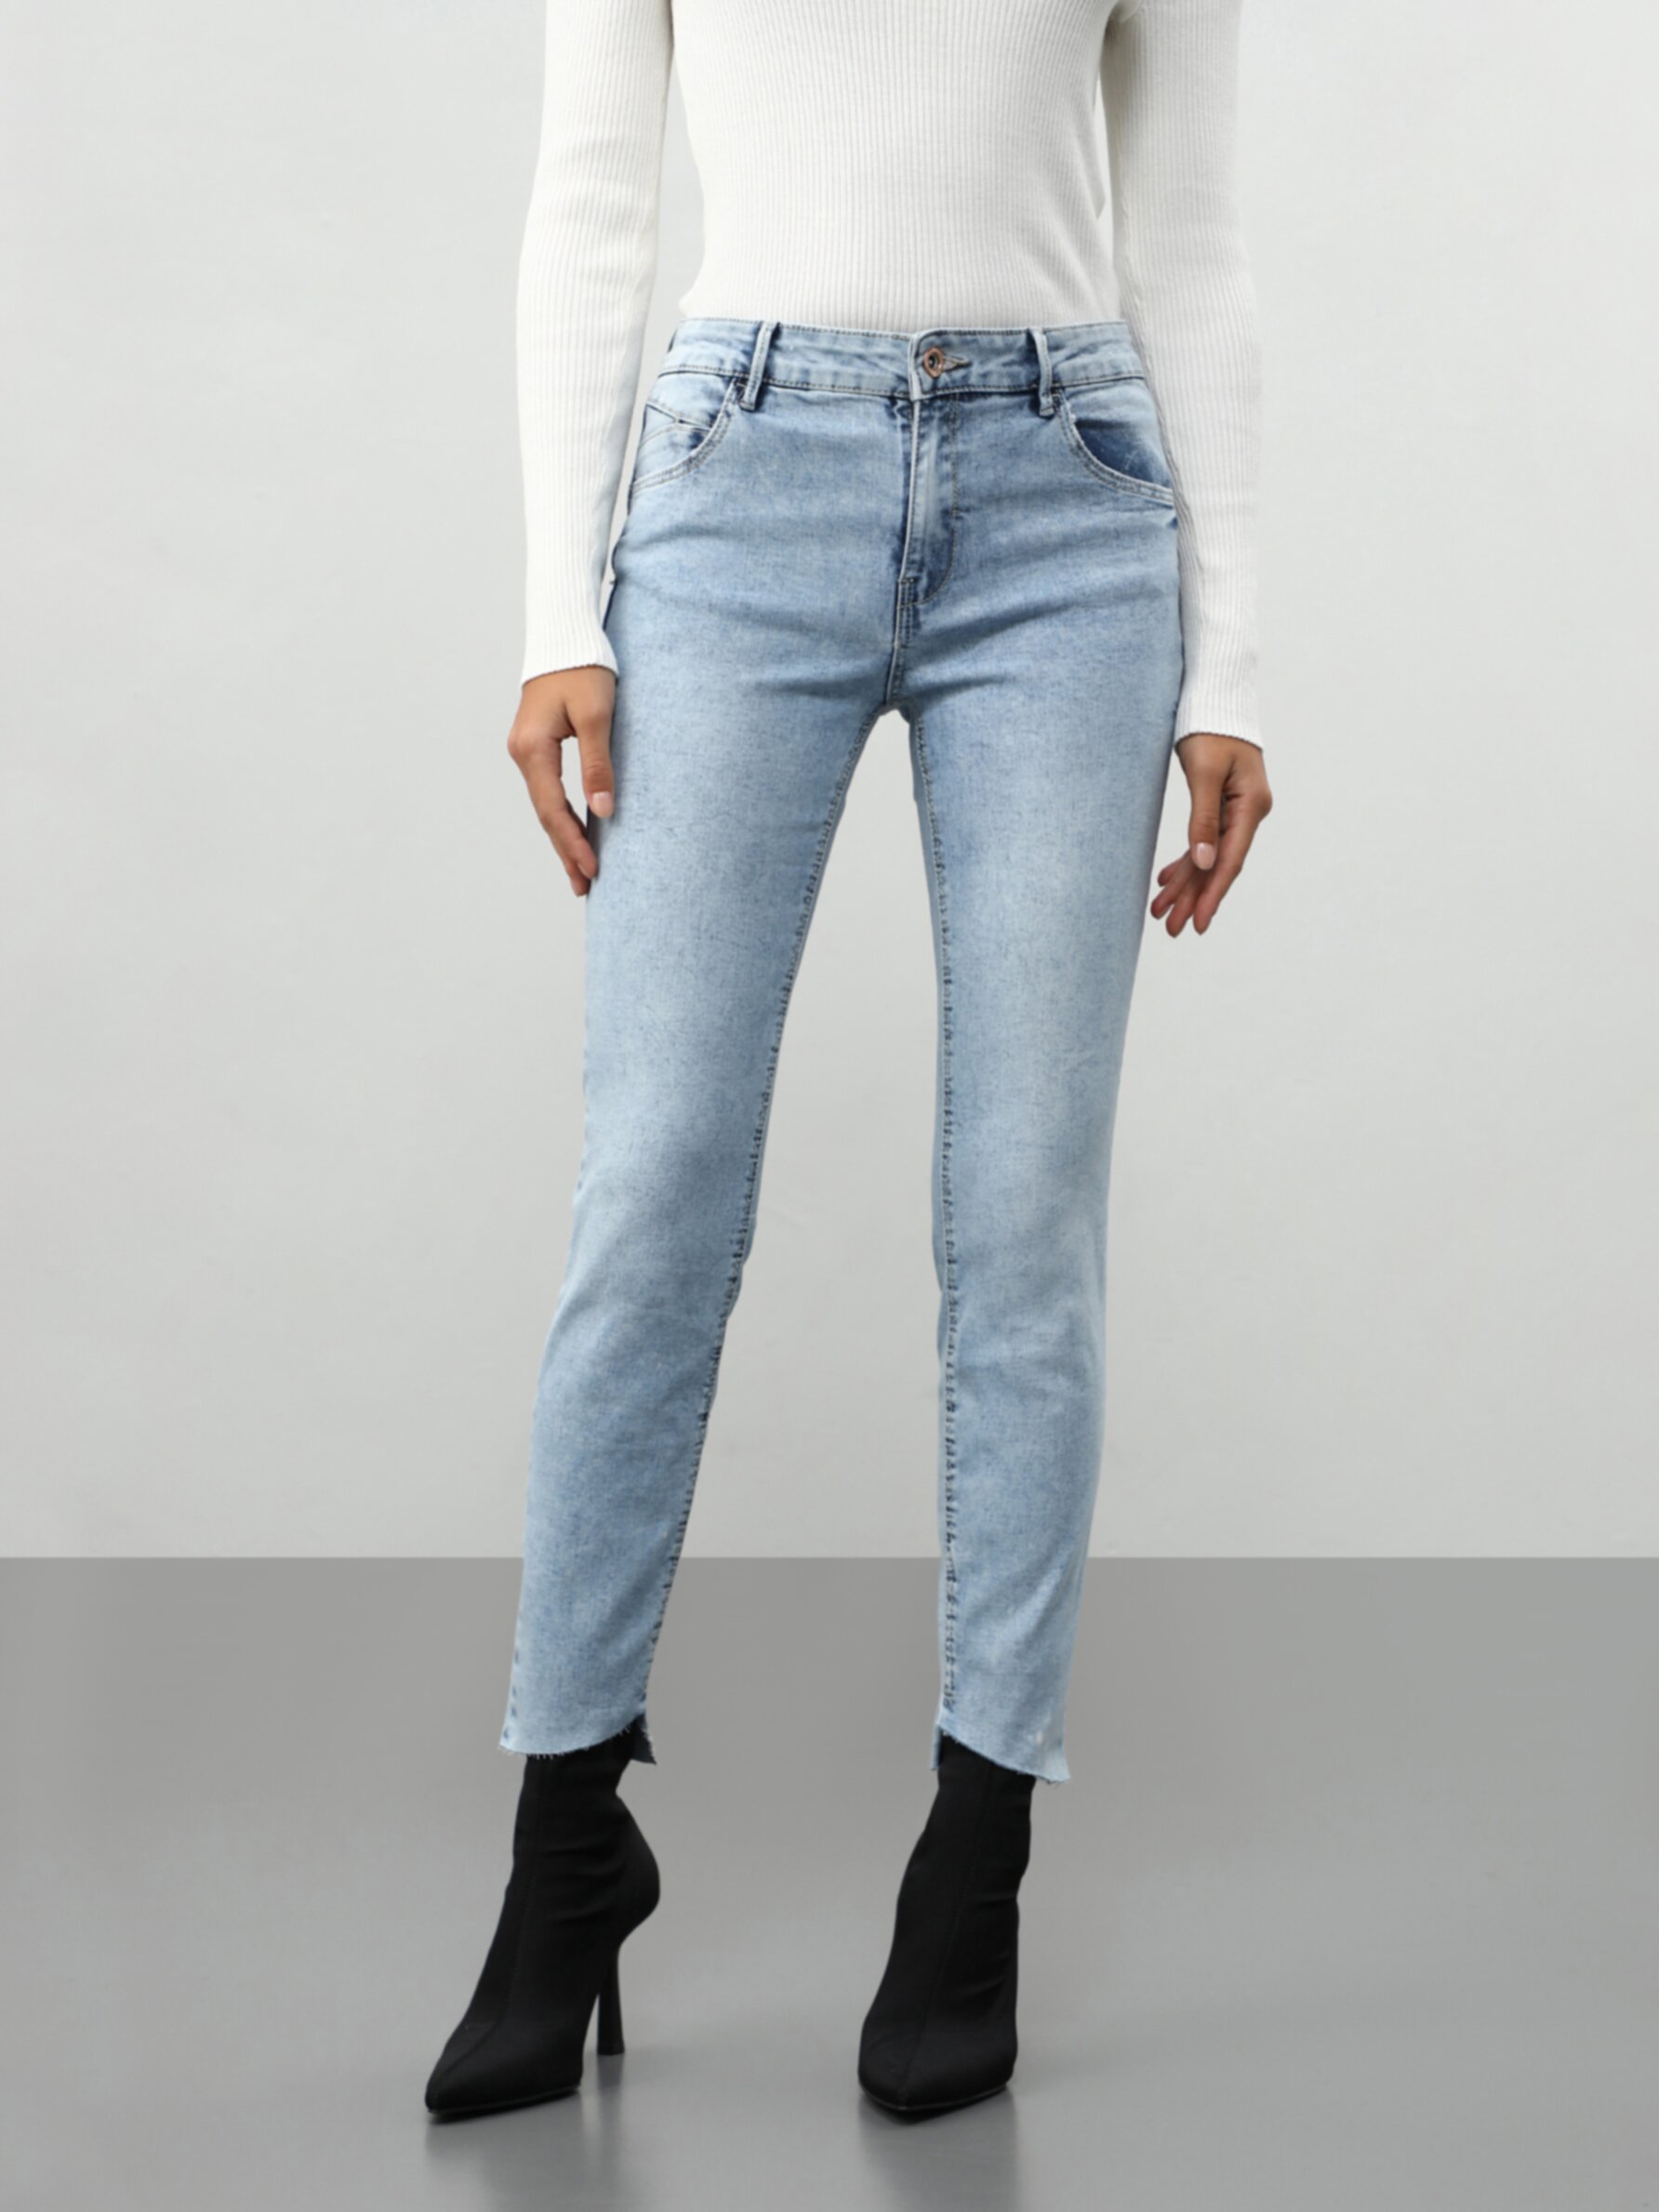 Jeans push-up - Cintura média / baixa - Calças De Ganga - ROUPA - Mulher 